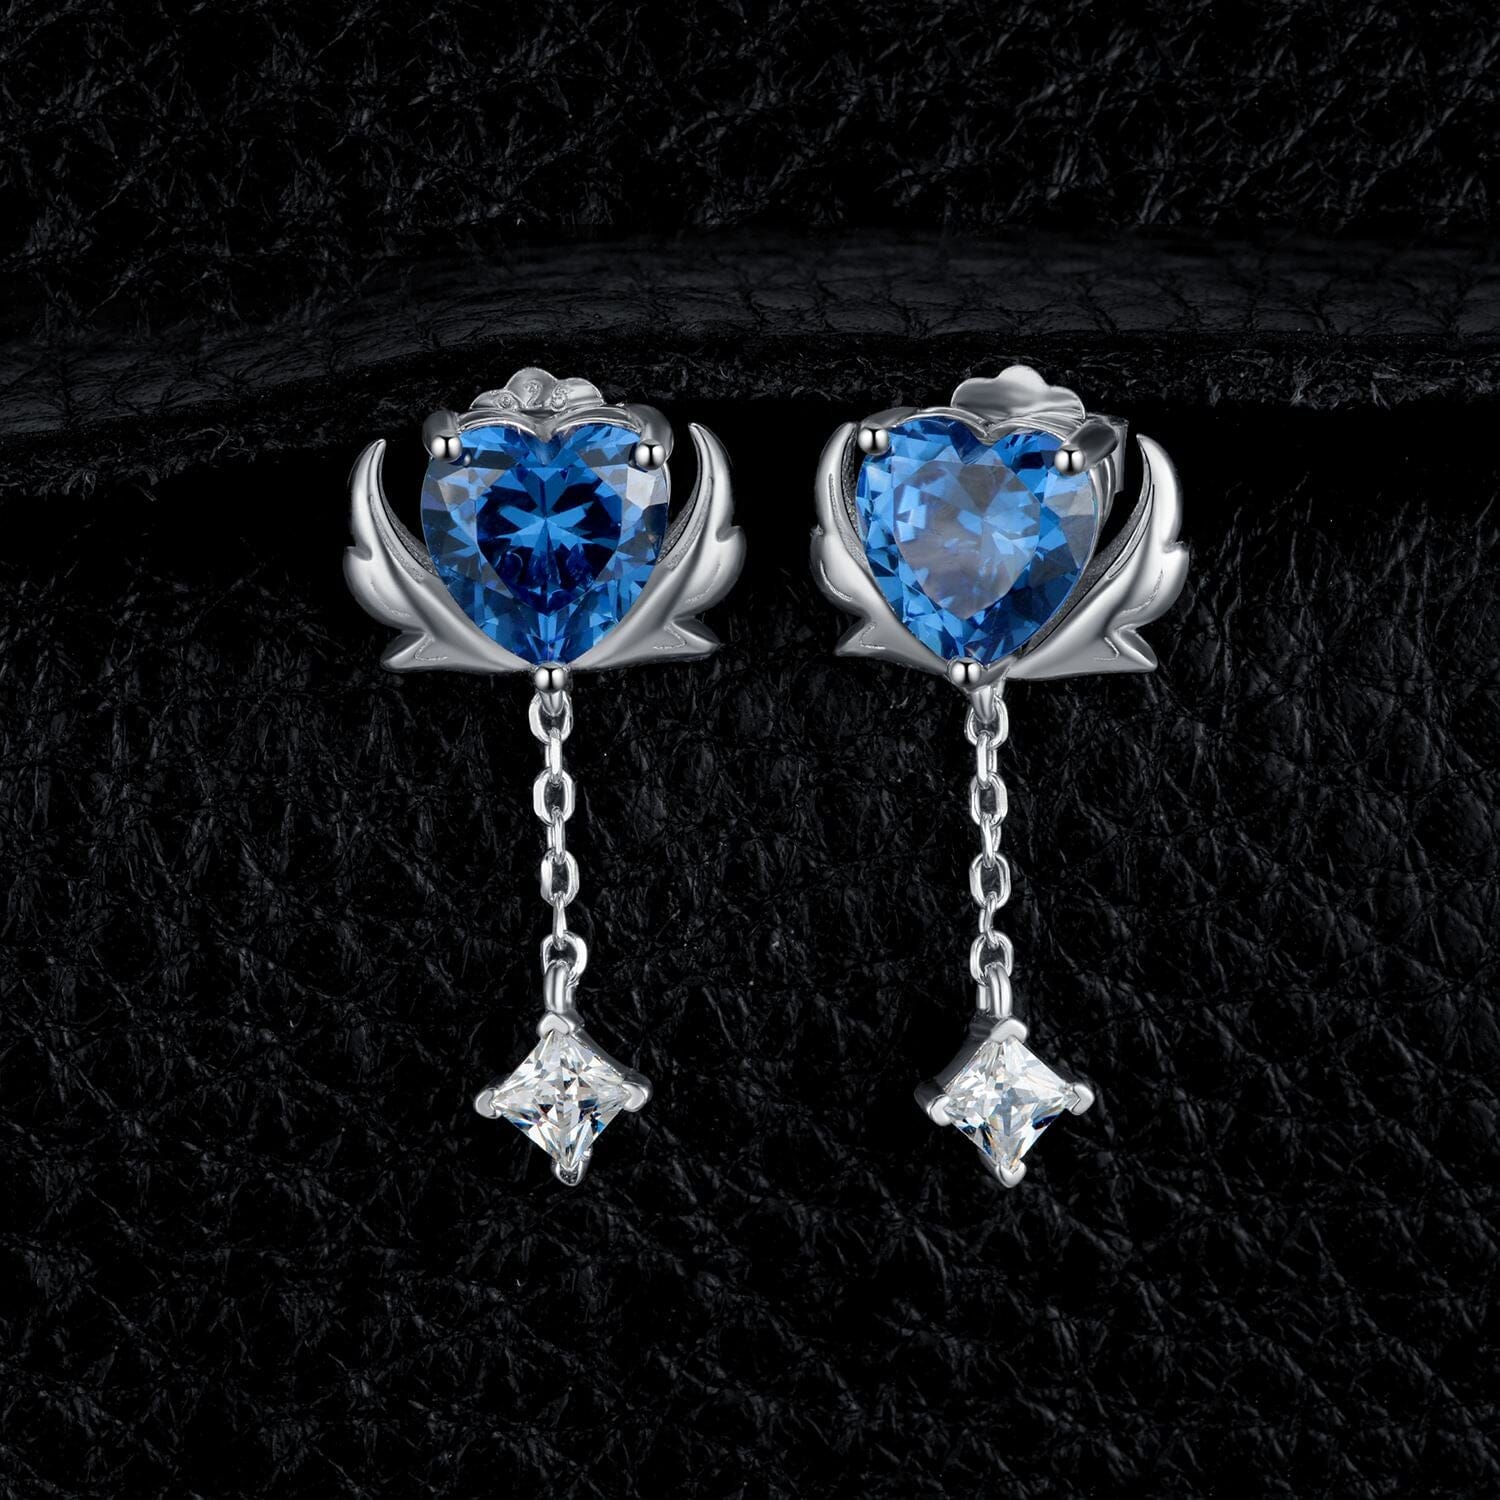 Angel Wing 3ct Love Heart Sapphire Stud Earrings - 925 Sterling SilverEarrings